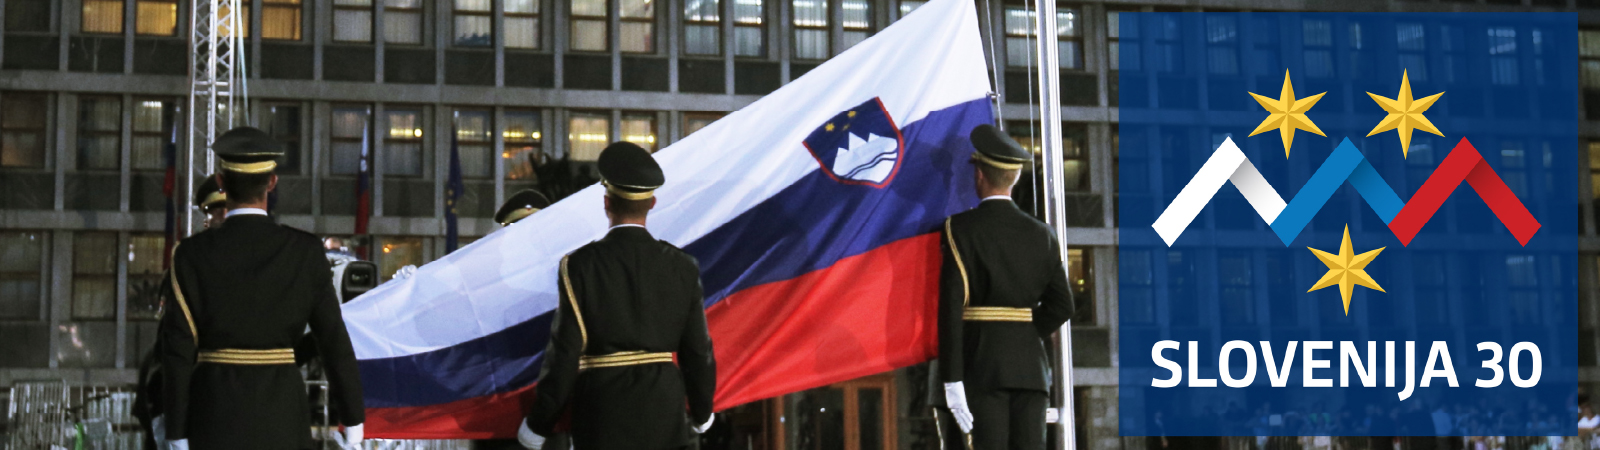 Častna straža na Trgu republike, dvig slovenske zastave.